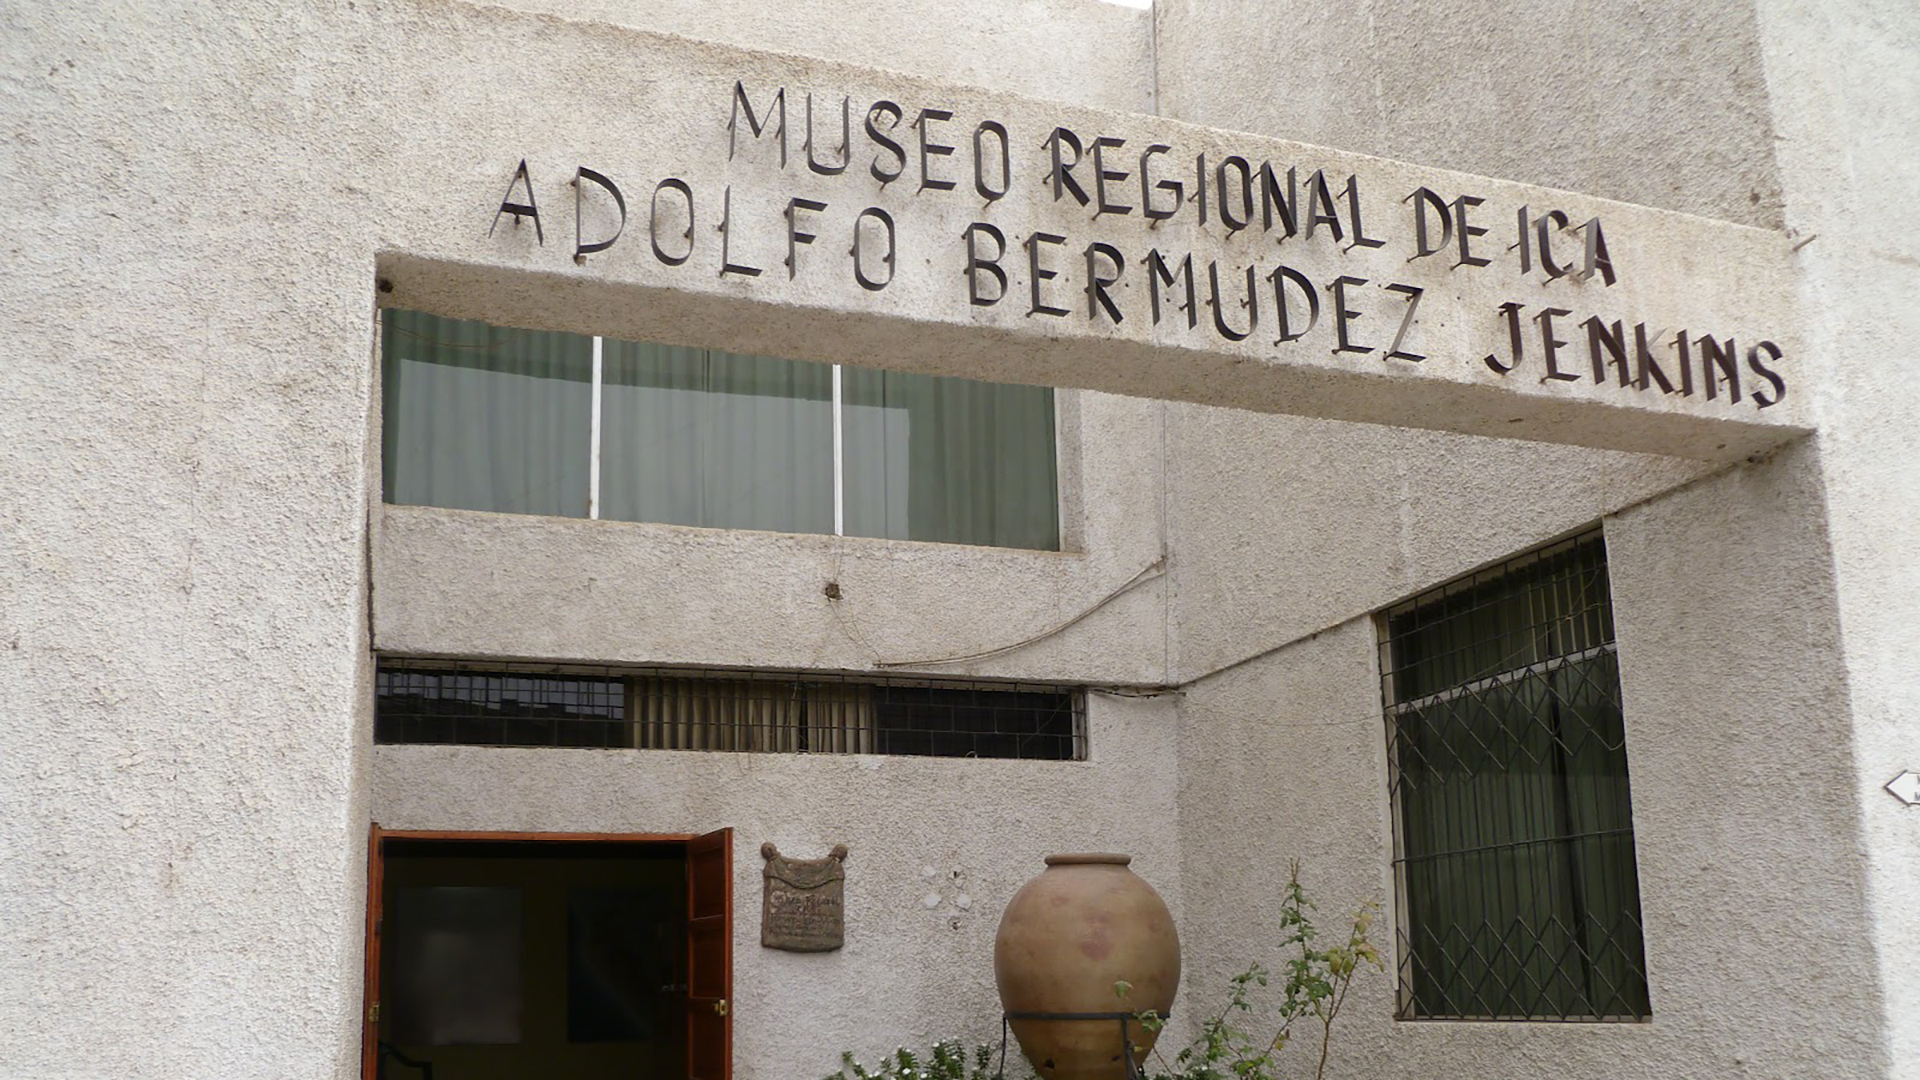 Museu Regional de Ica